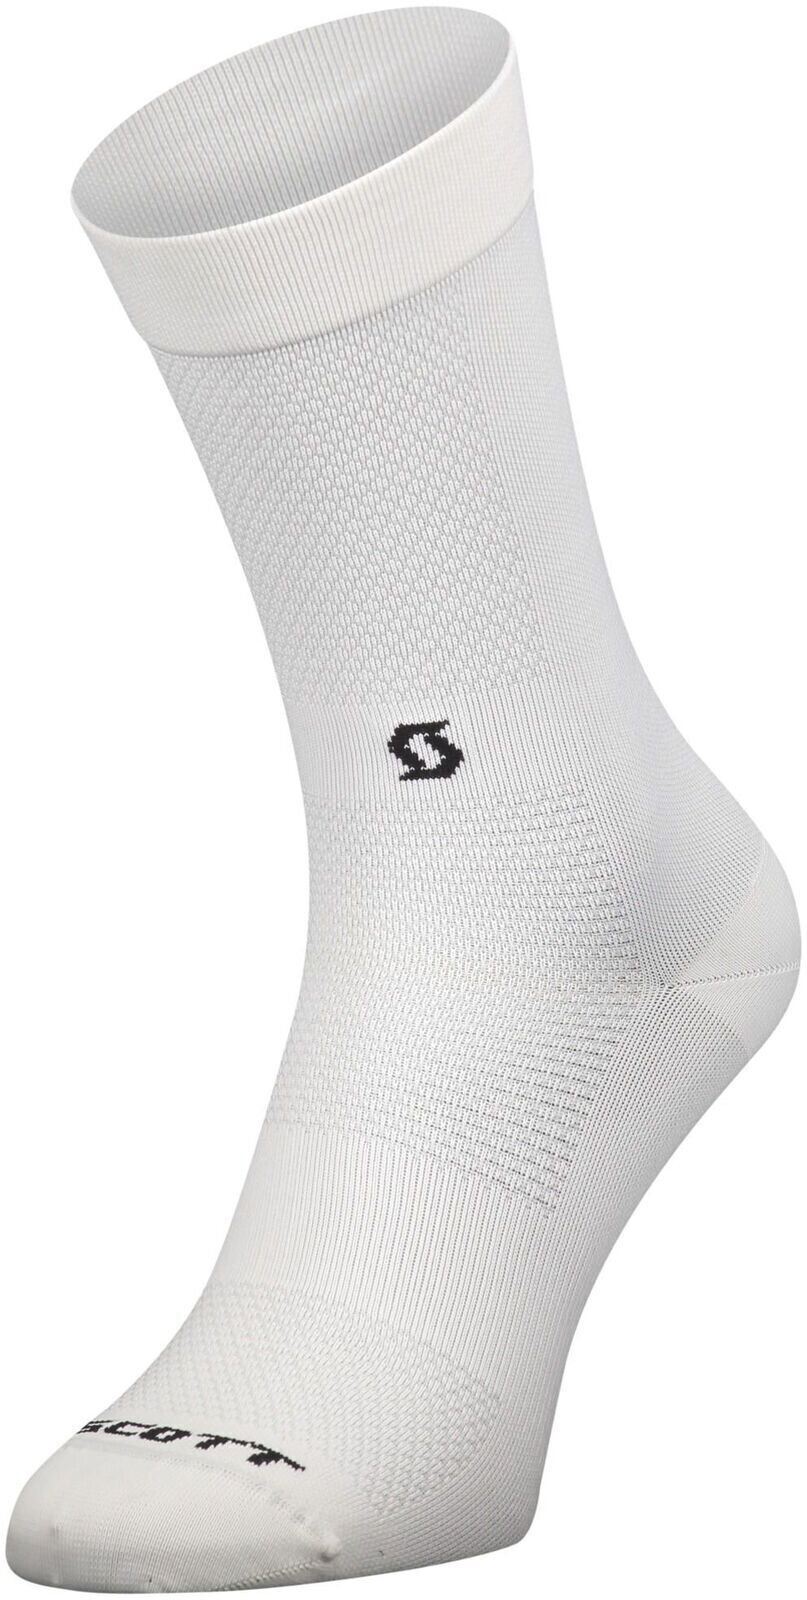 Biciklistički čarape Scott Performance No Shortcuts Crew Socks White/Black 42-44 Biciklistički čarape